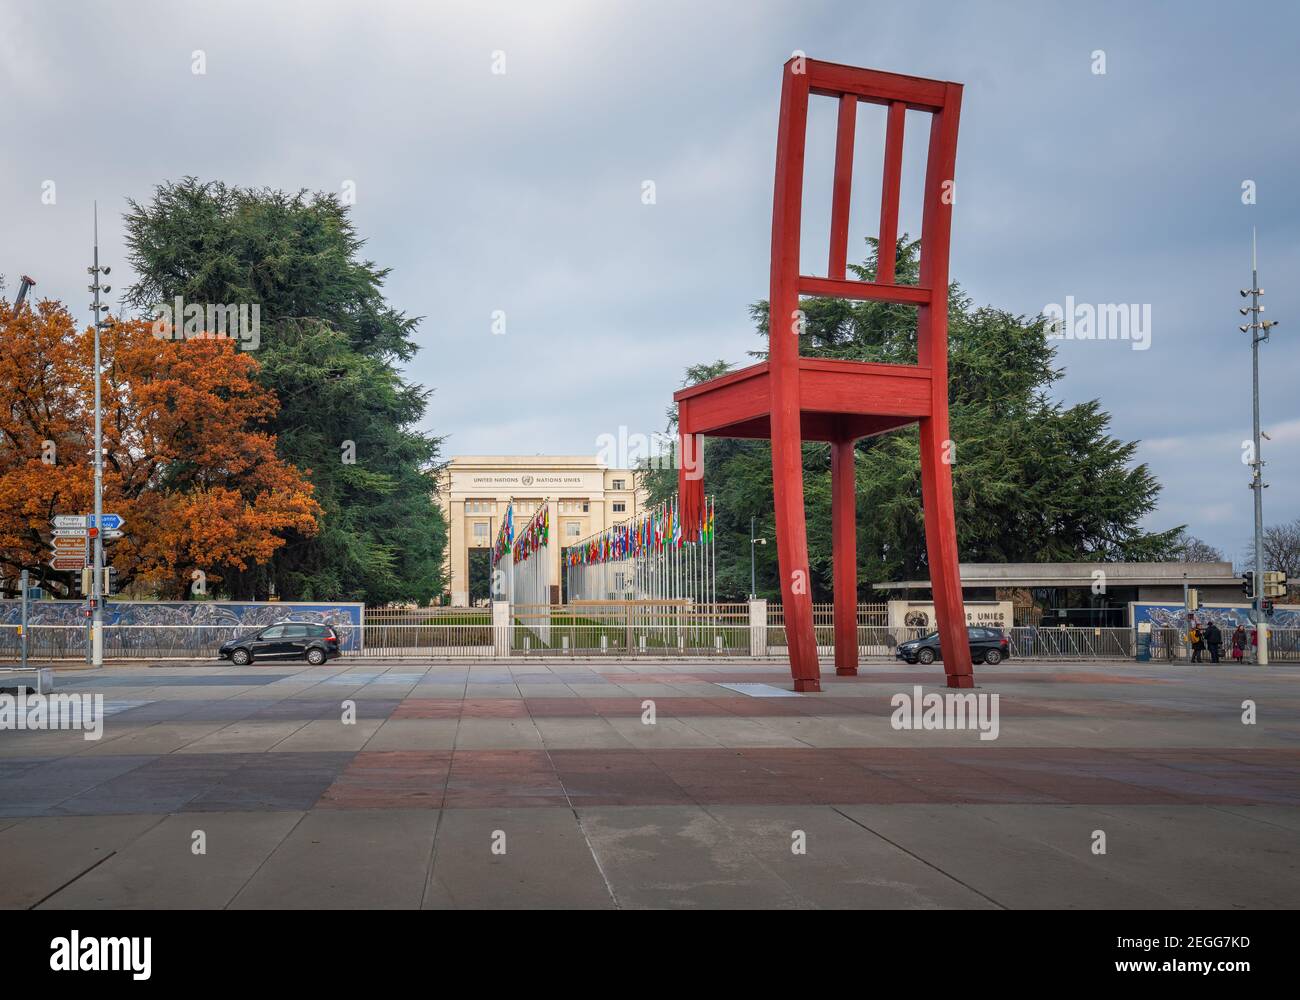 Sculpture de la place des Nations et de la chaise brisée de l'artiste Daniel Berset et du Palais des Nations (bureau des Nations Unies) en arrière-plan - Genève, Suisse Banque D'Images